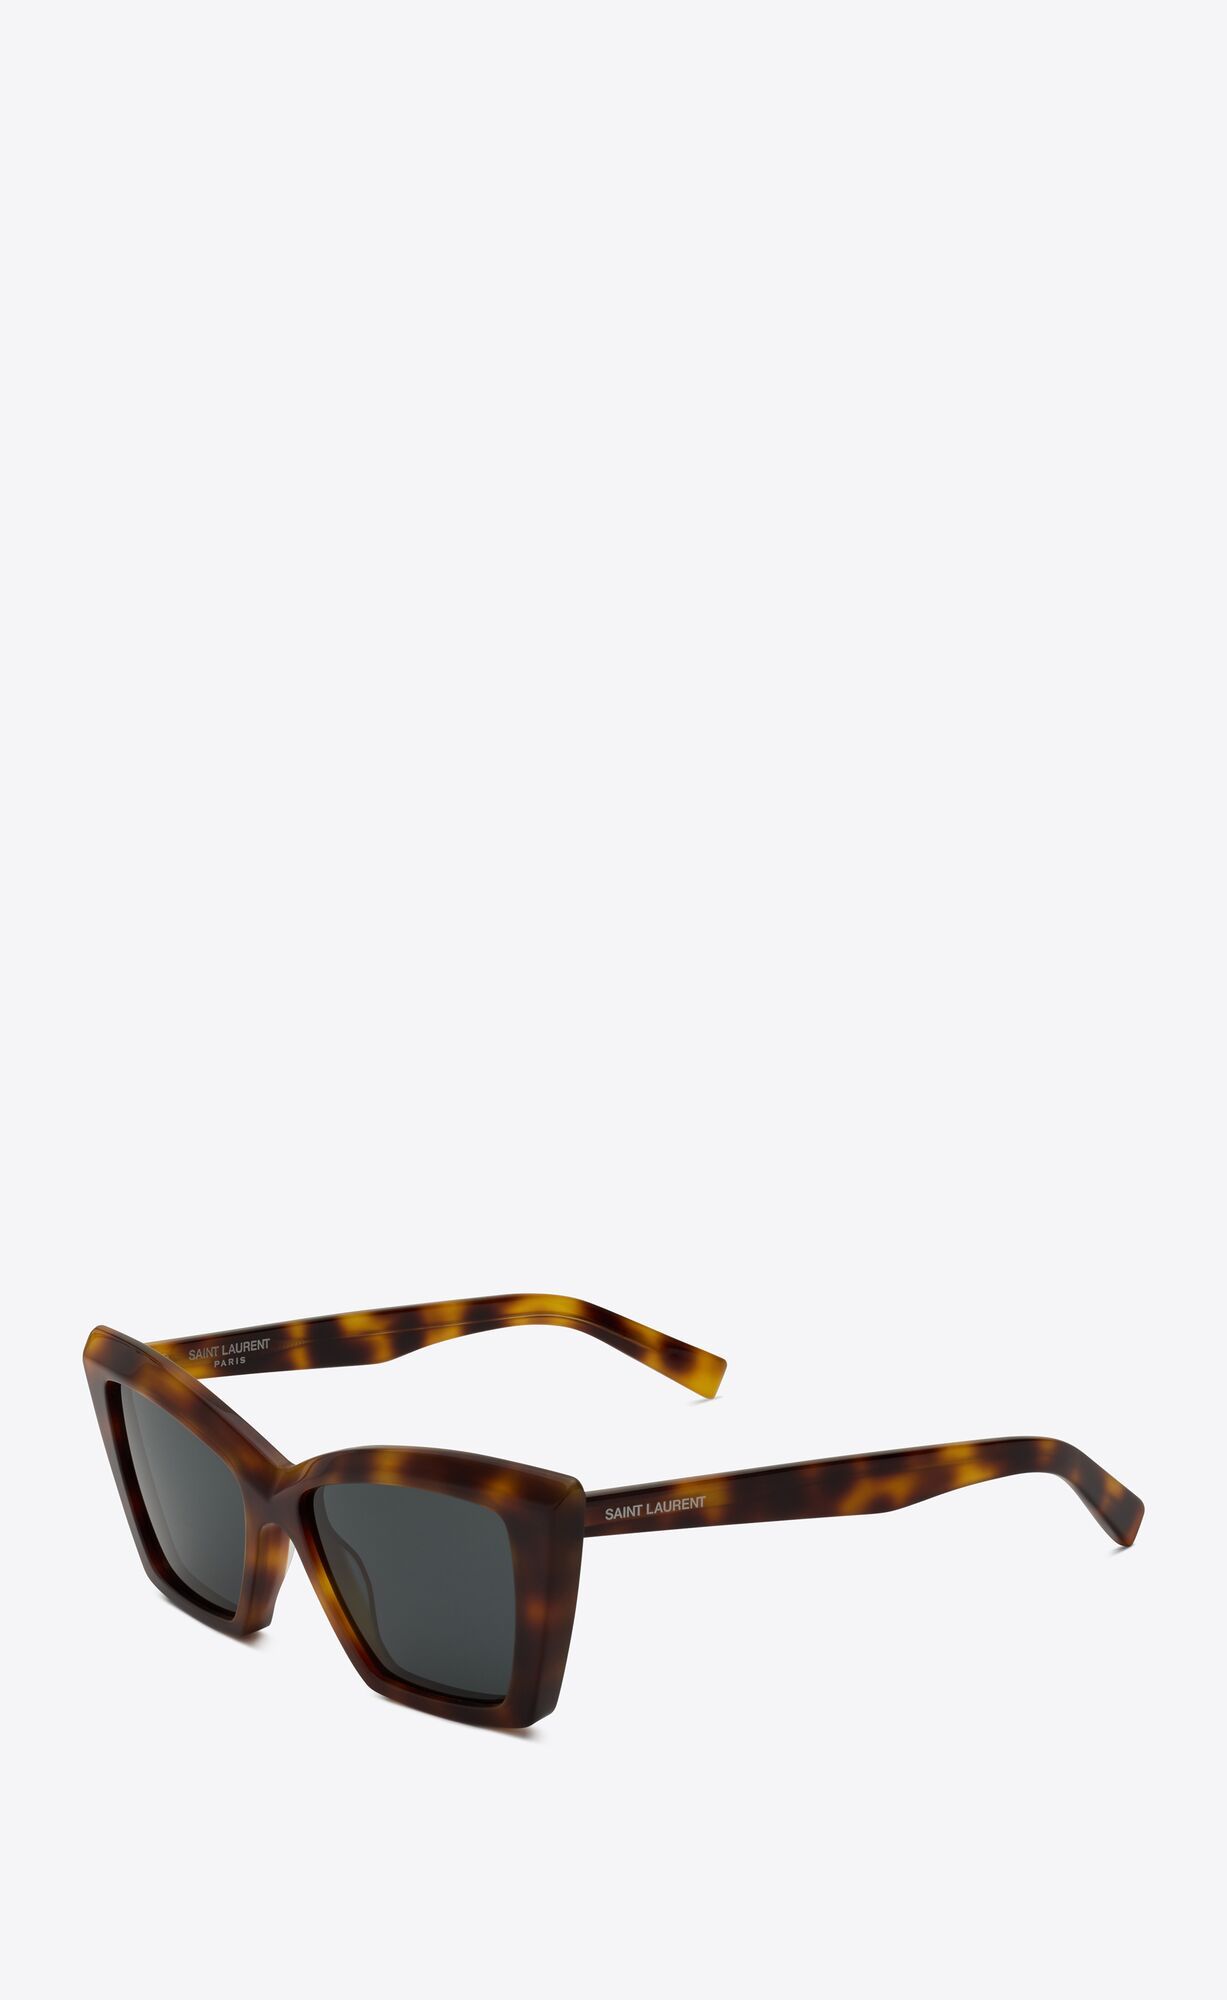 squared cat-eye sunglasses with tortoiseshell acetate frames and nylon lenses. | Saint Laurent Inc. (Global)